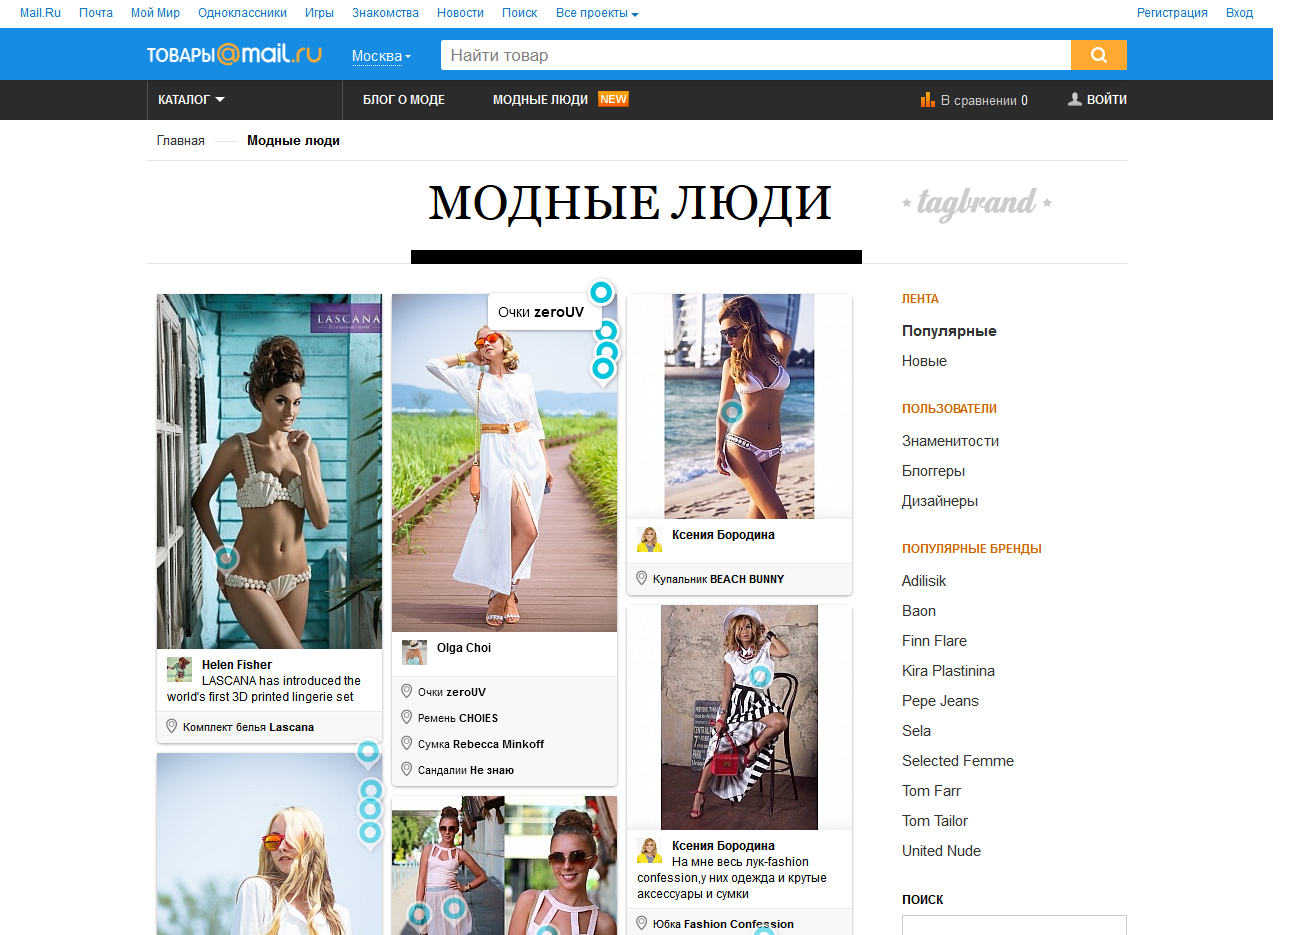 Mail.ru  интегрировали TagBrand в Товары@Mail.ru через полтора года после покупки доли